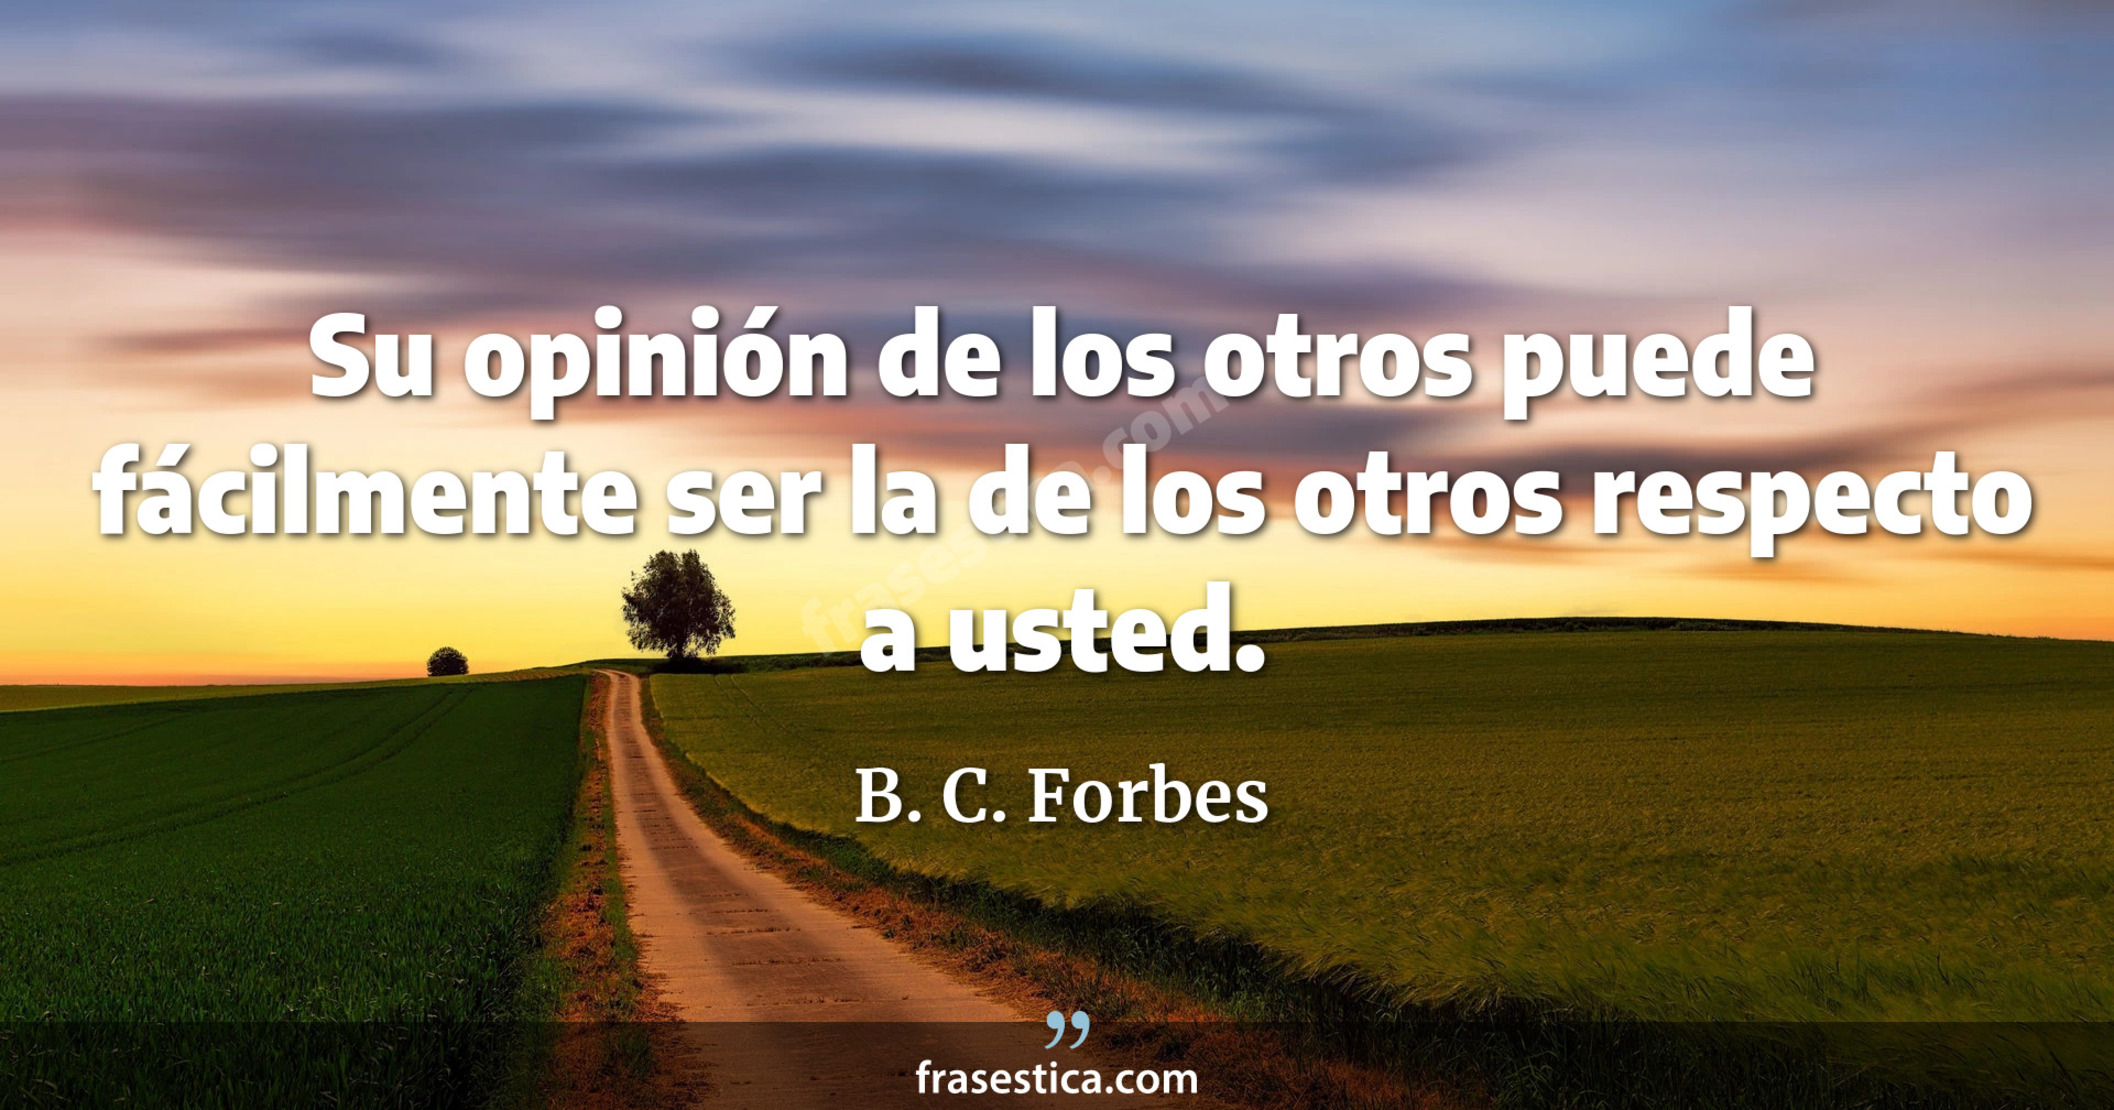 Su opinión de los otros puede fácilmente ser la de los otros respecto a usted. - B. C. Forbes